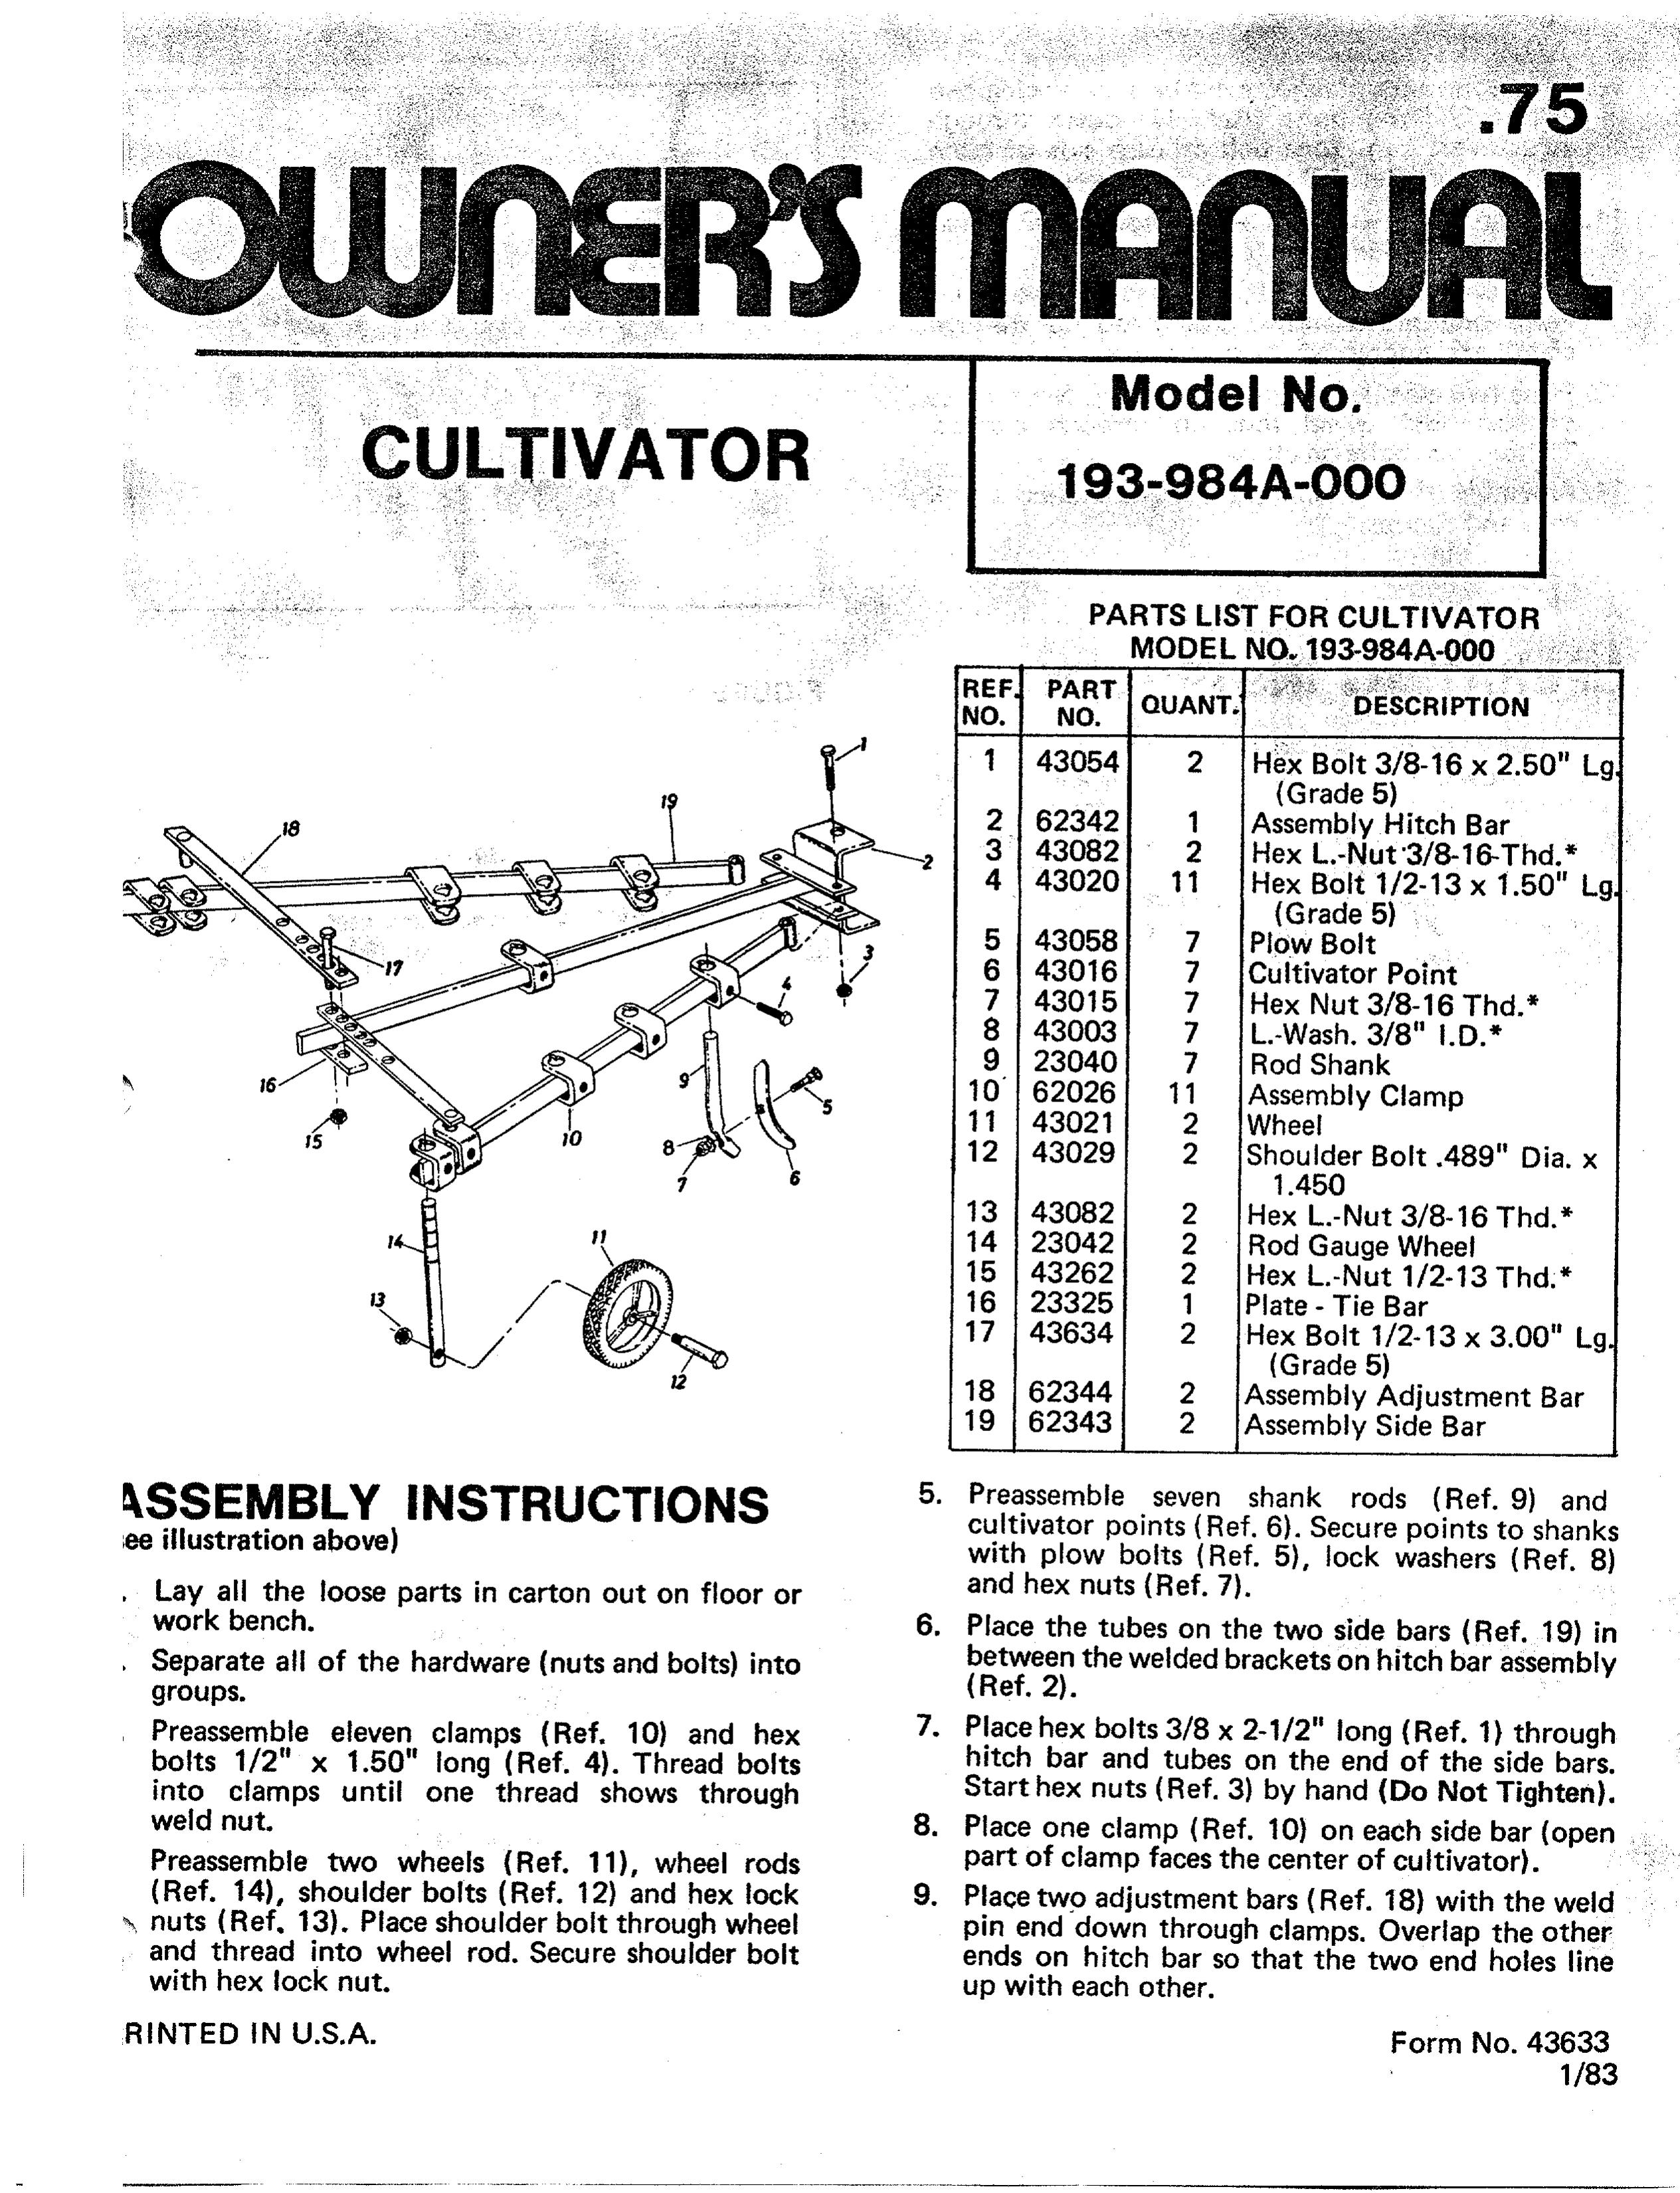 Bolens 193-984A-000 Cultivator User Manual